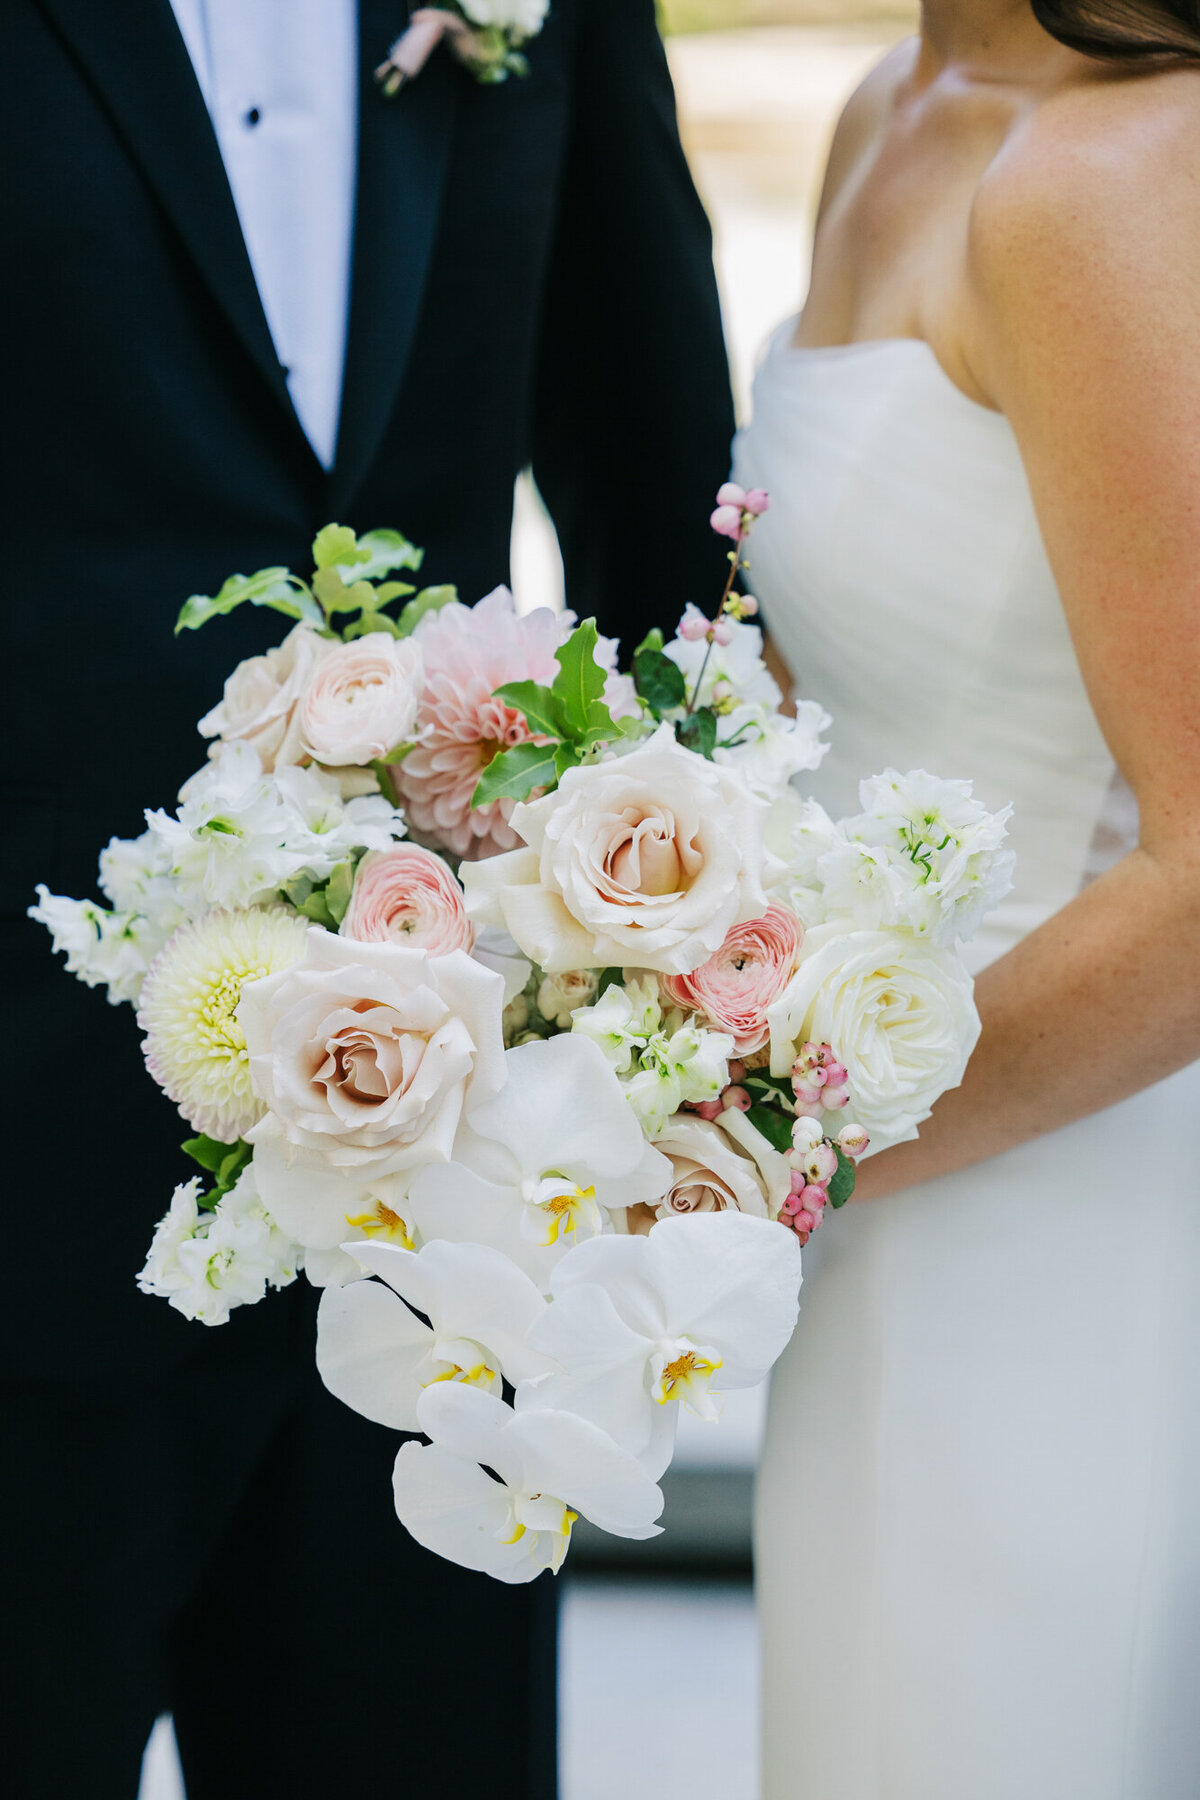 A detail photo of a bridal bouquet